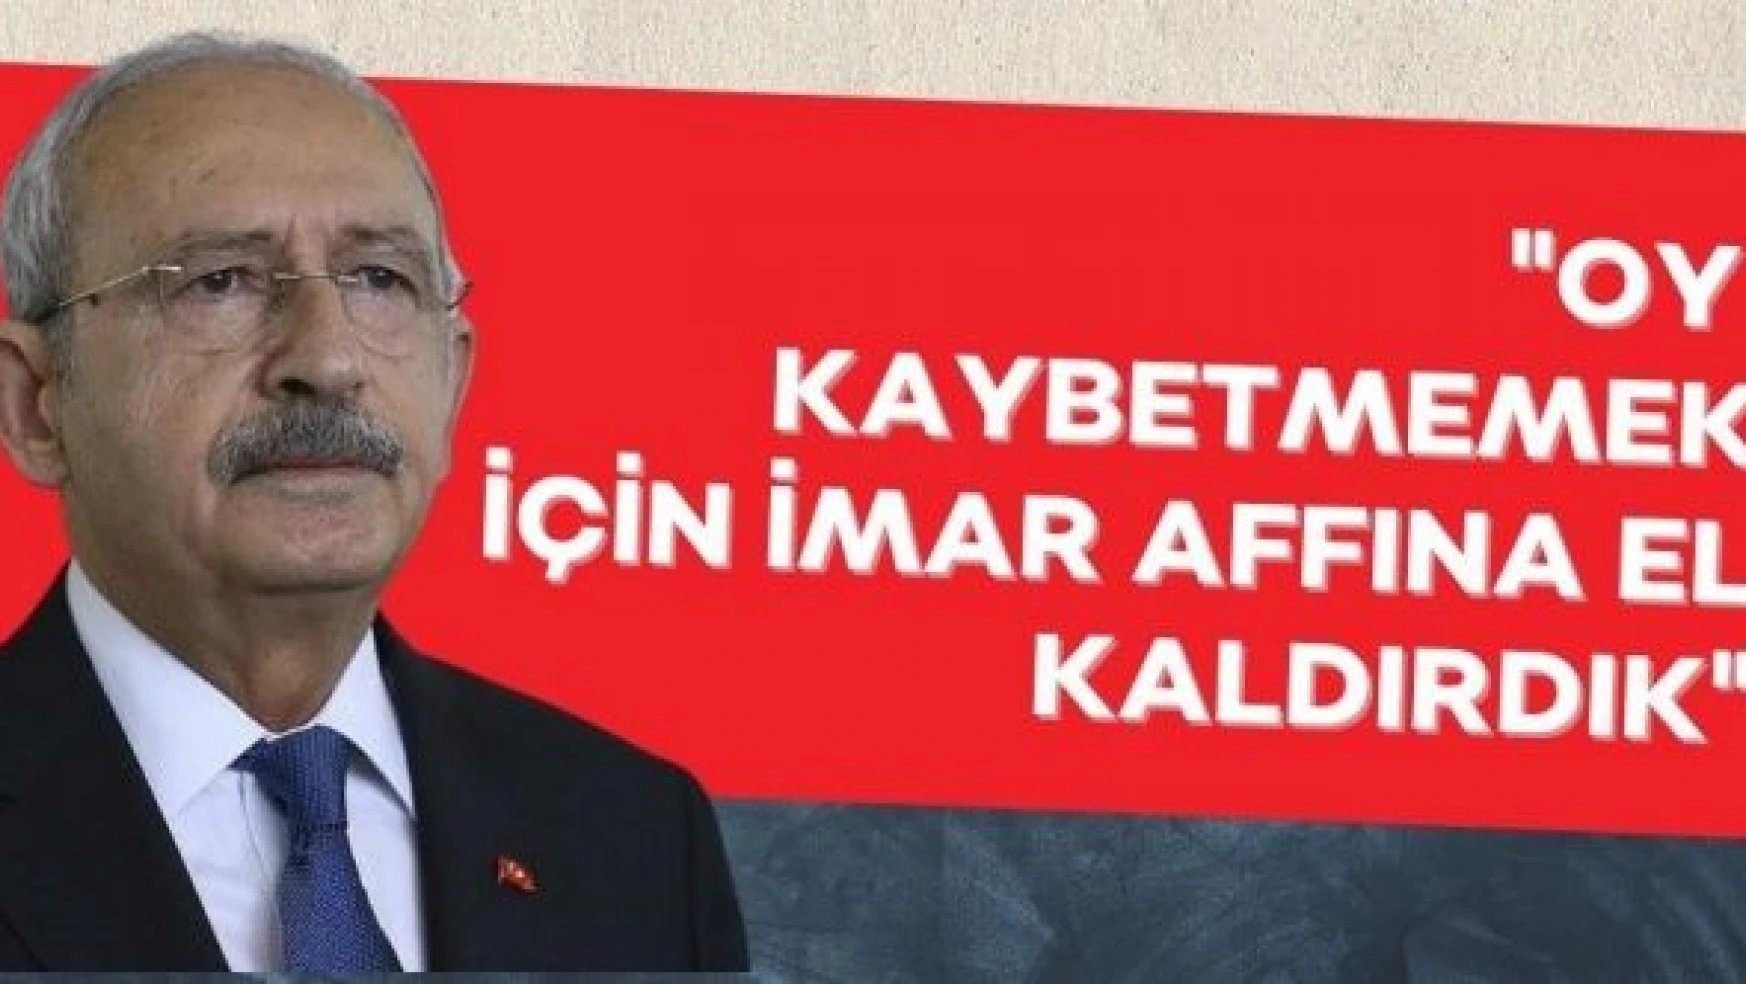 Kılıçdaroğlu: 'Oy kaybetmemek için imar affına el kaldırdık'